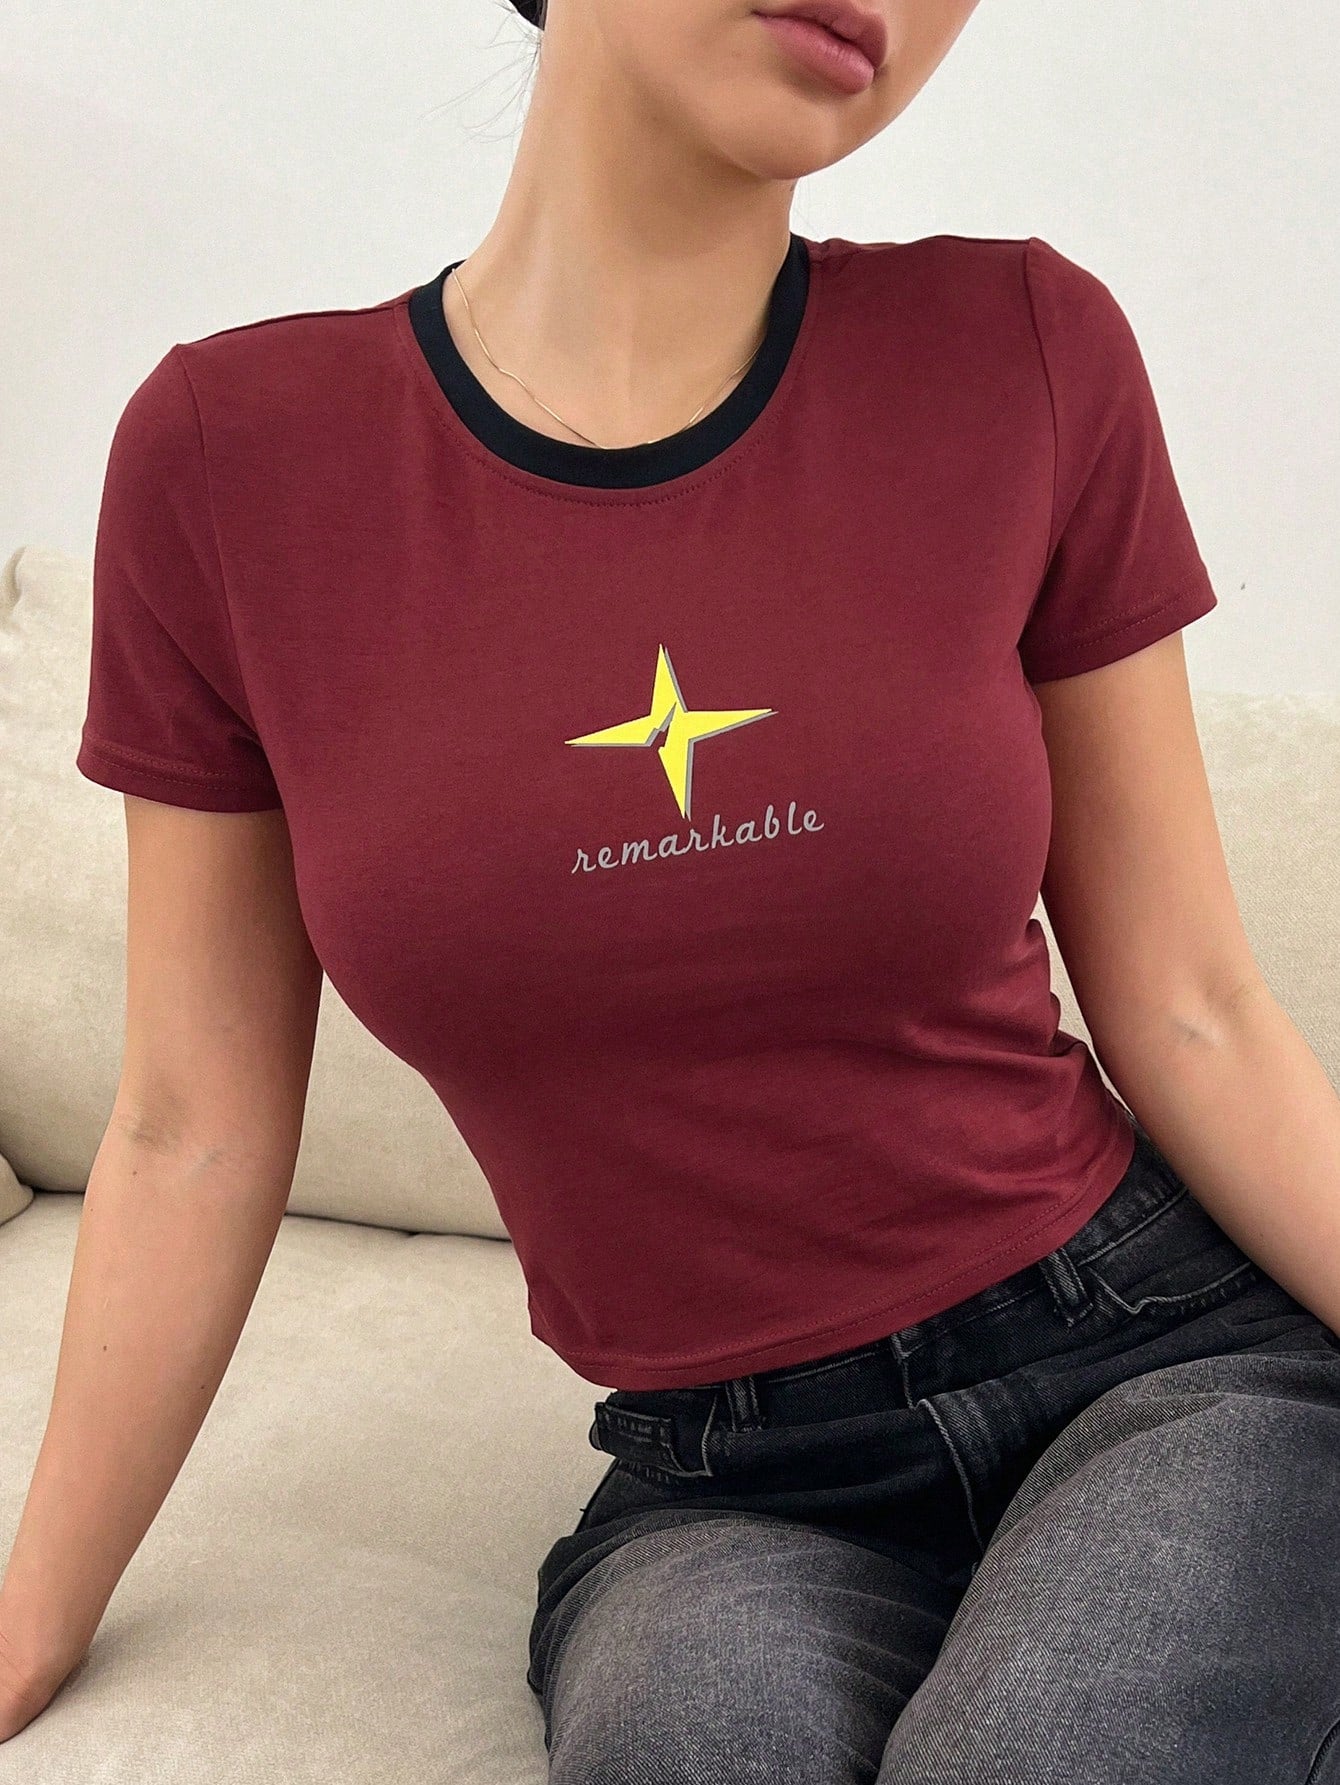 Letter & Star Printed Short Sleeve T-Shirt For Women